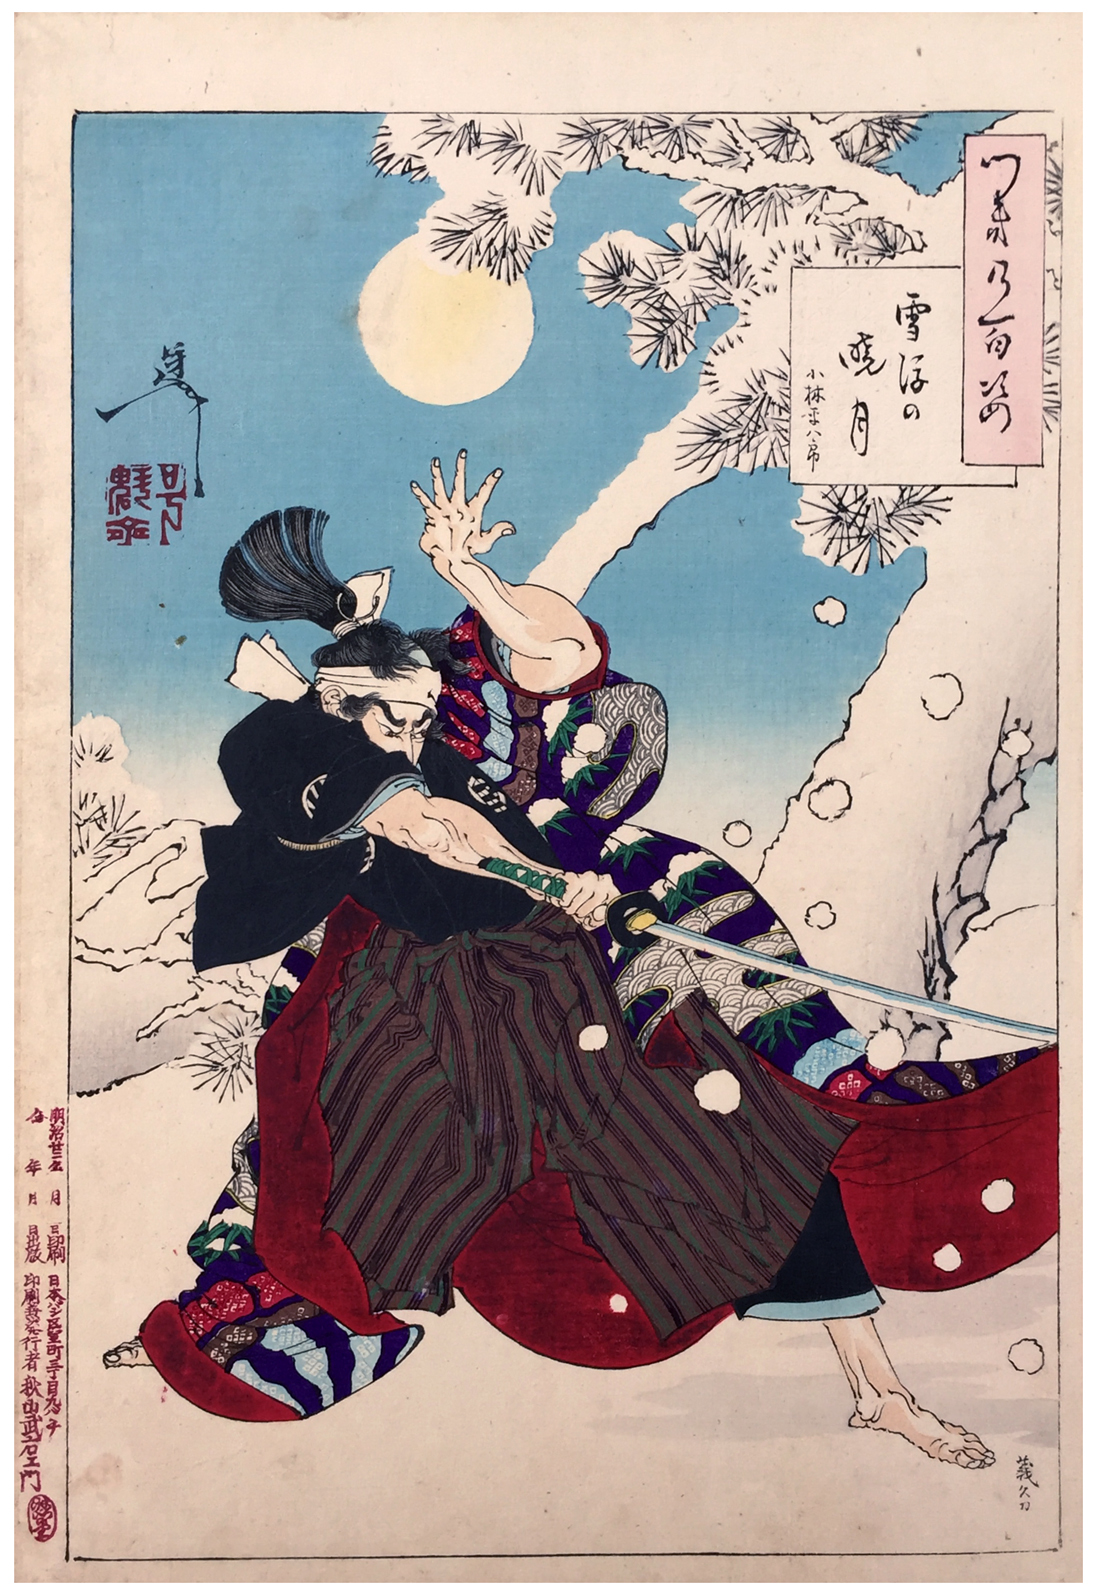 सेप्पु नो गयोगेटसु (सूर्योदय के समय को चाँद और फिसलता बर्फ) by Tsukioka Yoshitoshi - 1889 